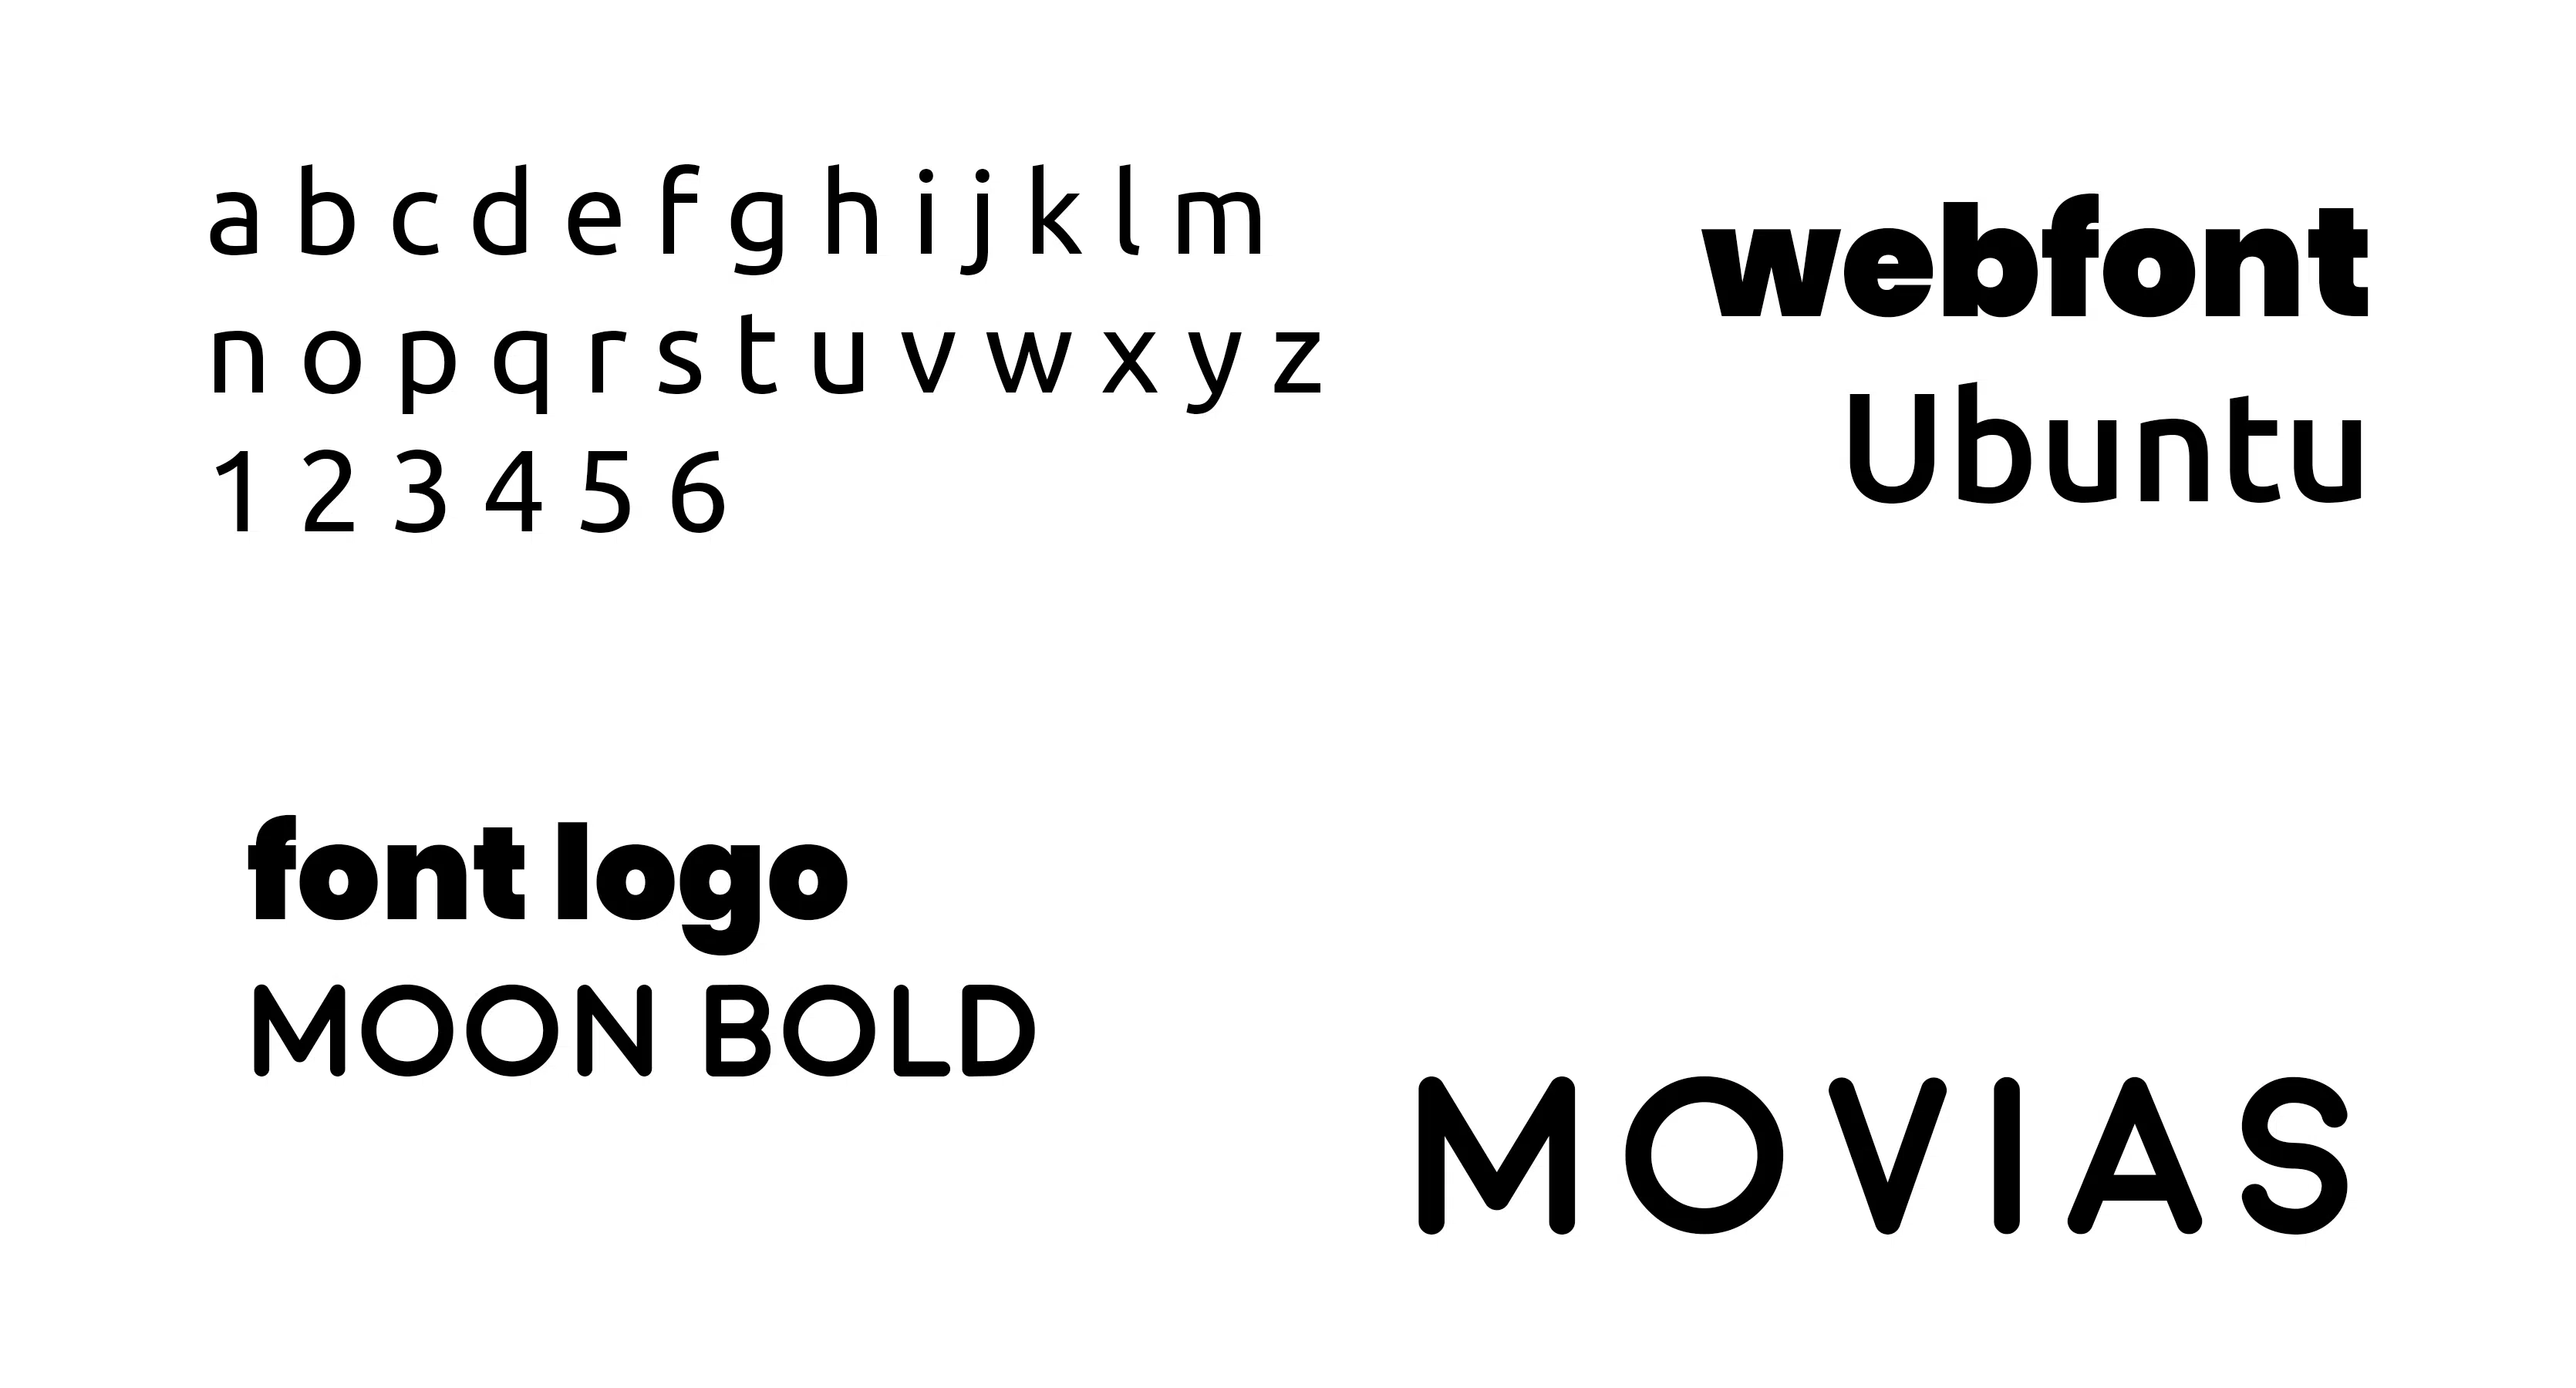 lettertype movias full branding